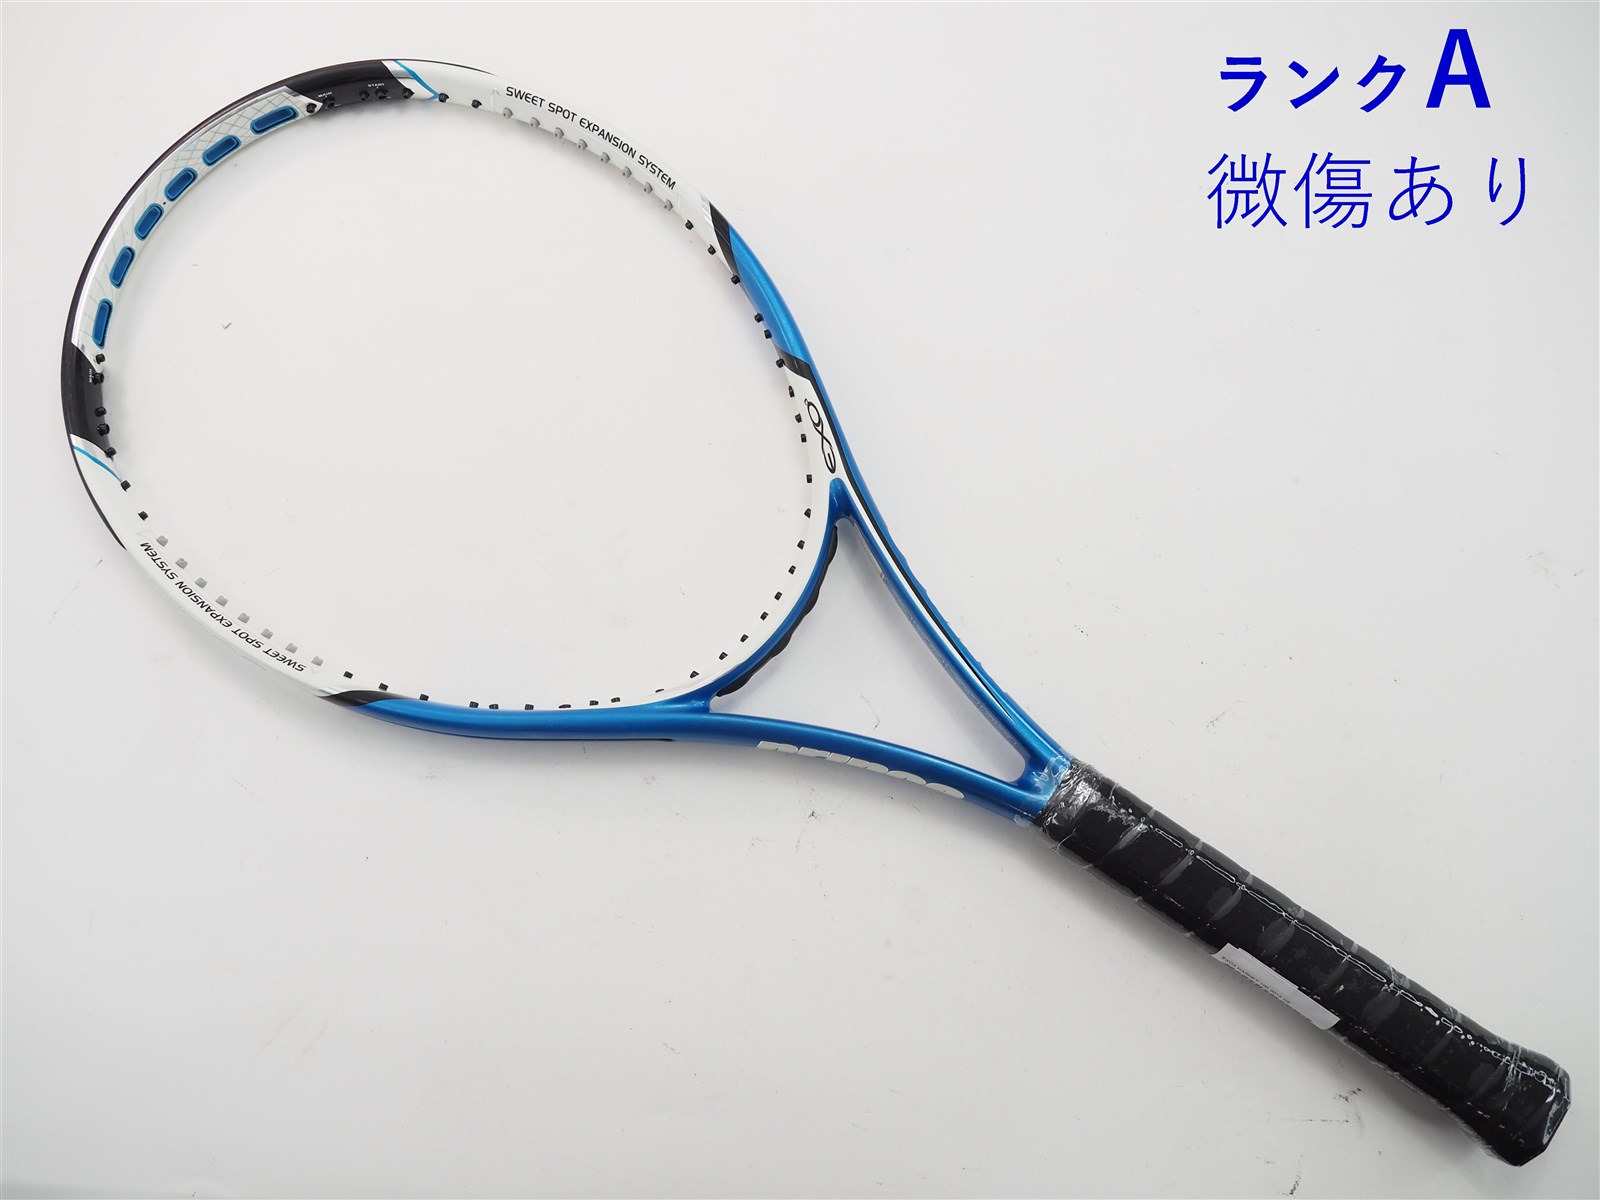 テニスラケット プリンス イーエックスオースリー ハーネット 100 2012年モデル (G2)PRINCE EXO3 HARNET 100 2012